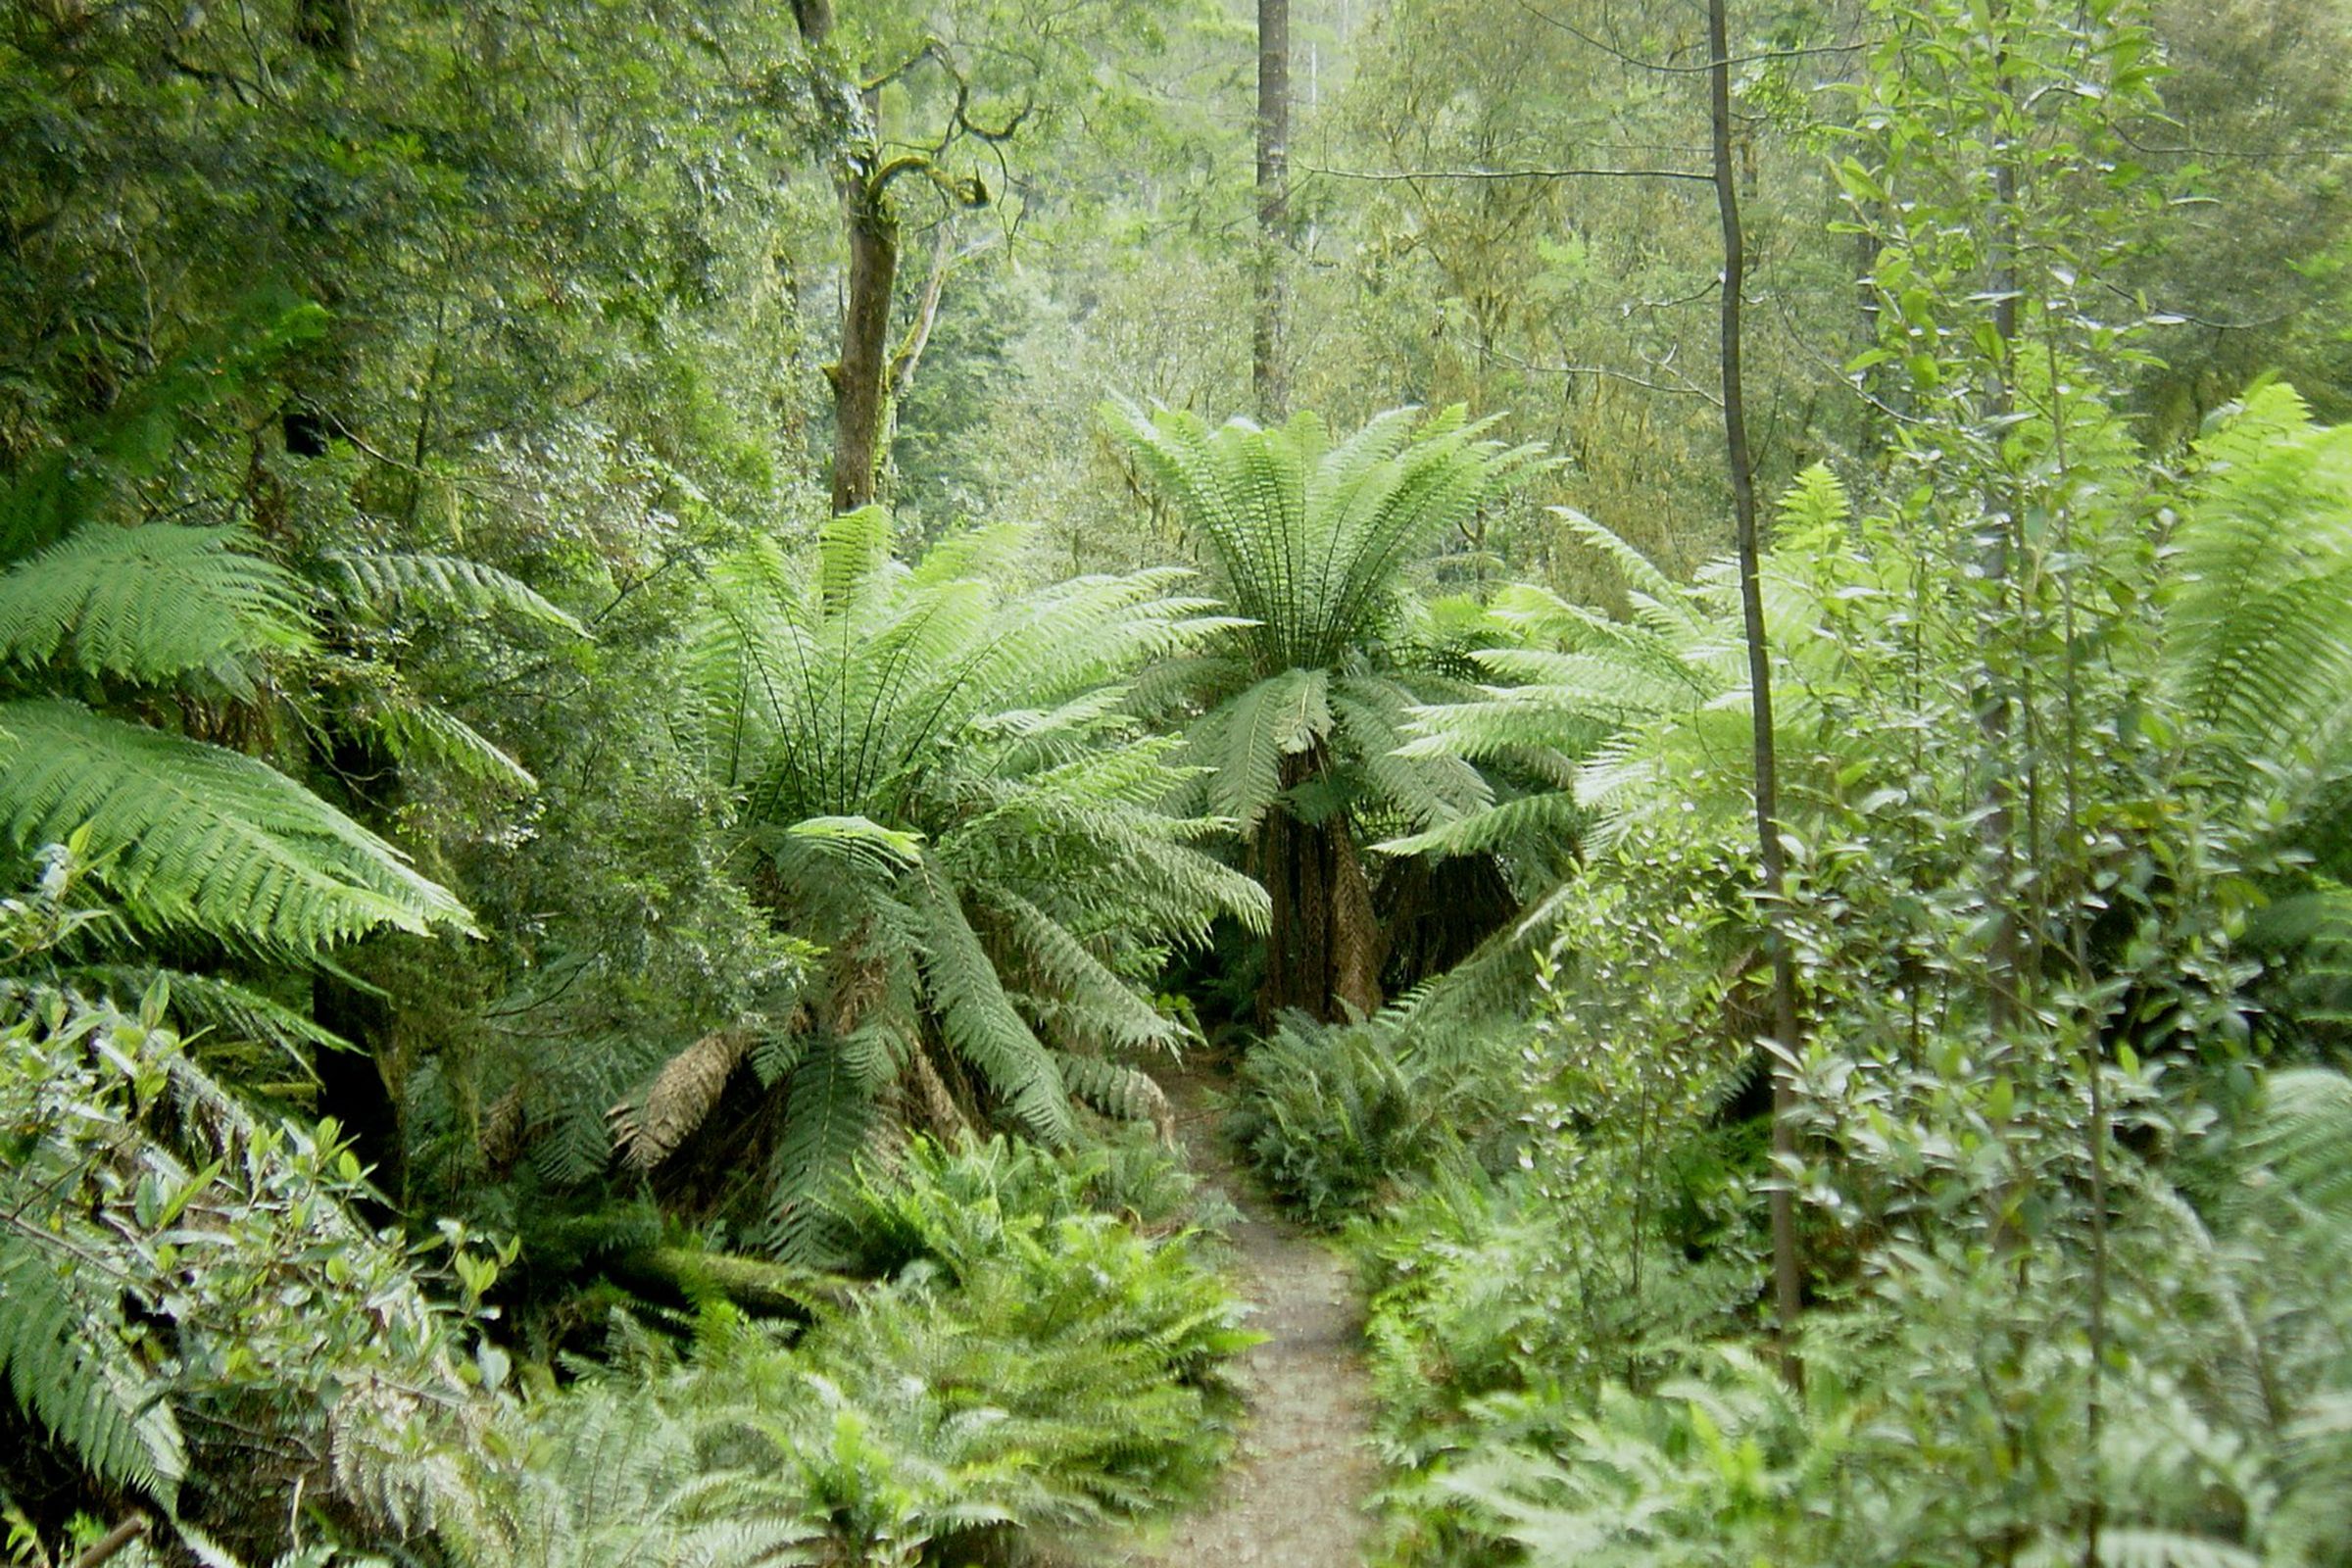 Rainforest in Tasmania’s Hellyer Gorge